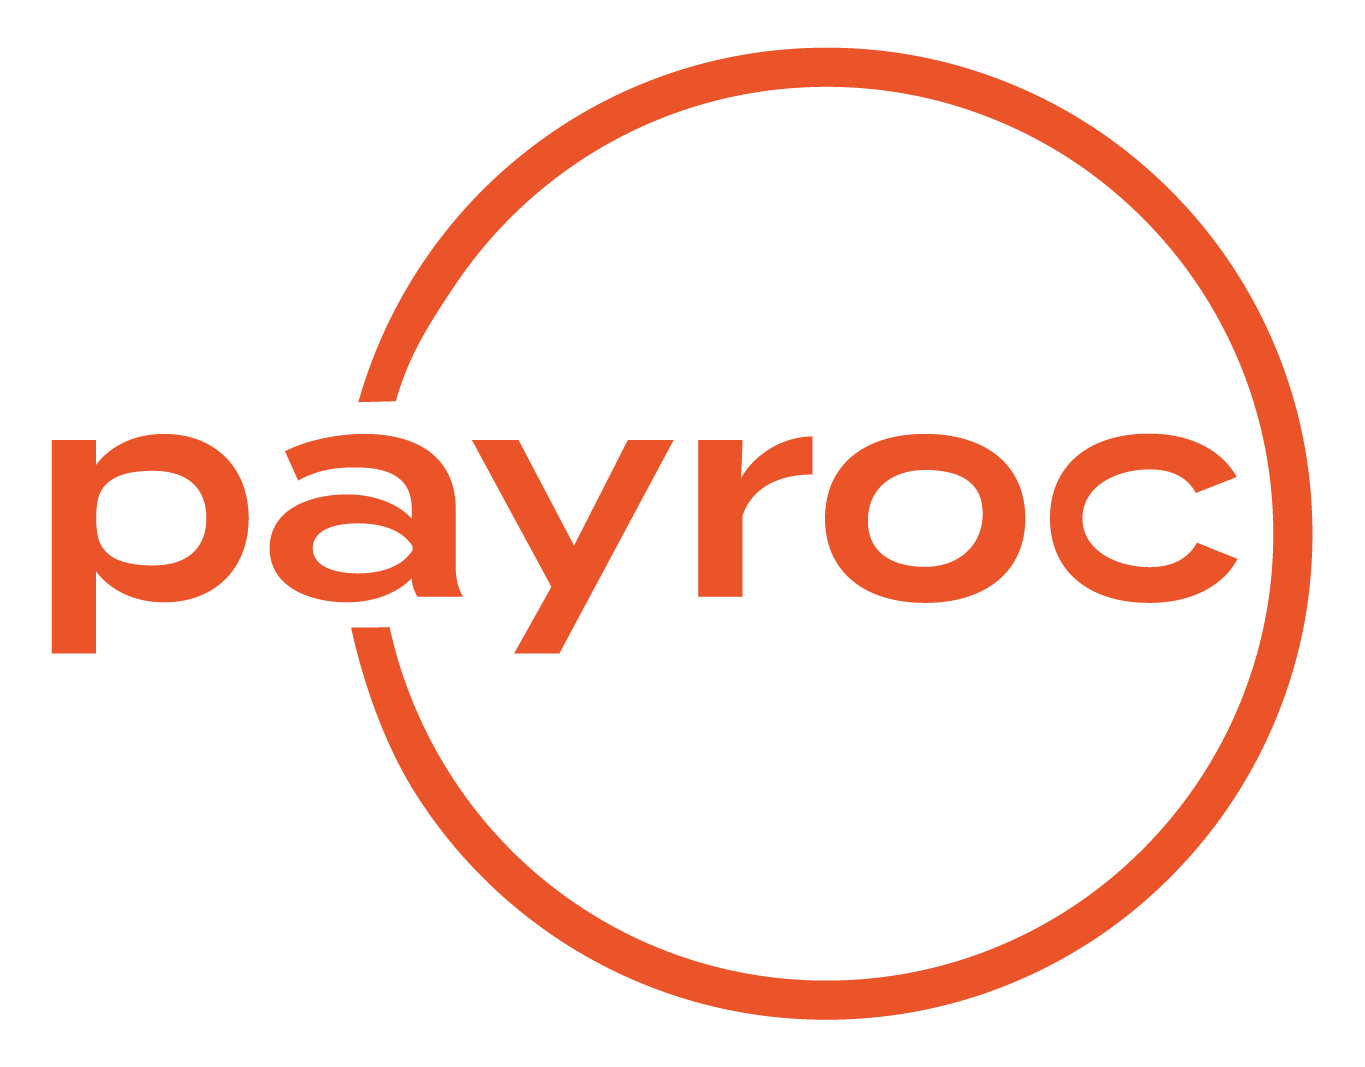 payroc_logo